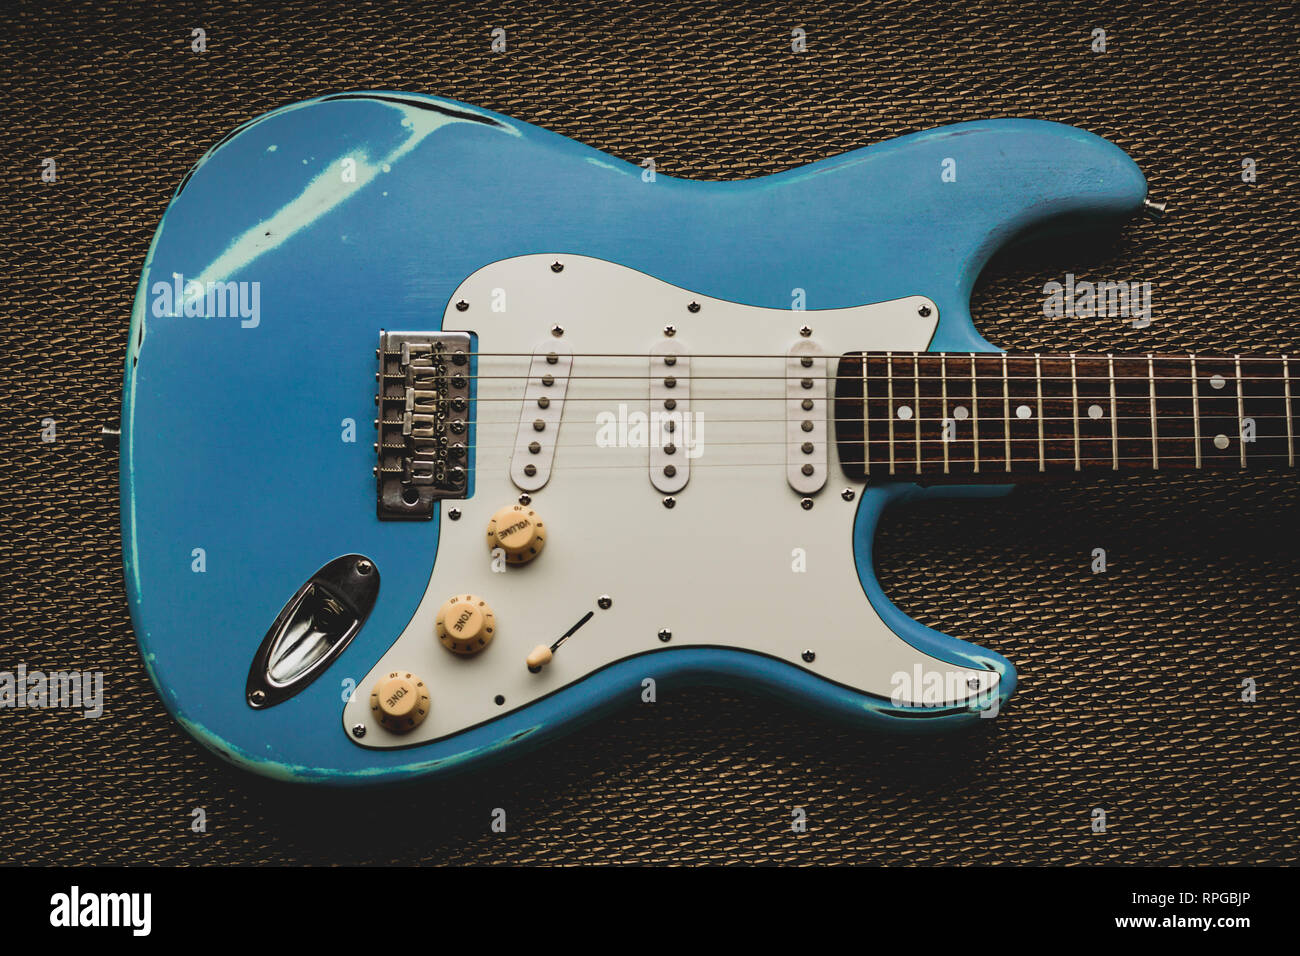 Blue guitare électrique dans un golden texture background. Guitare usés d'âge Banque D'Images